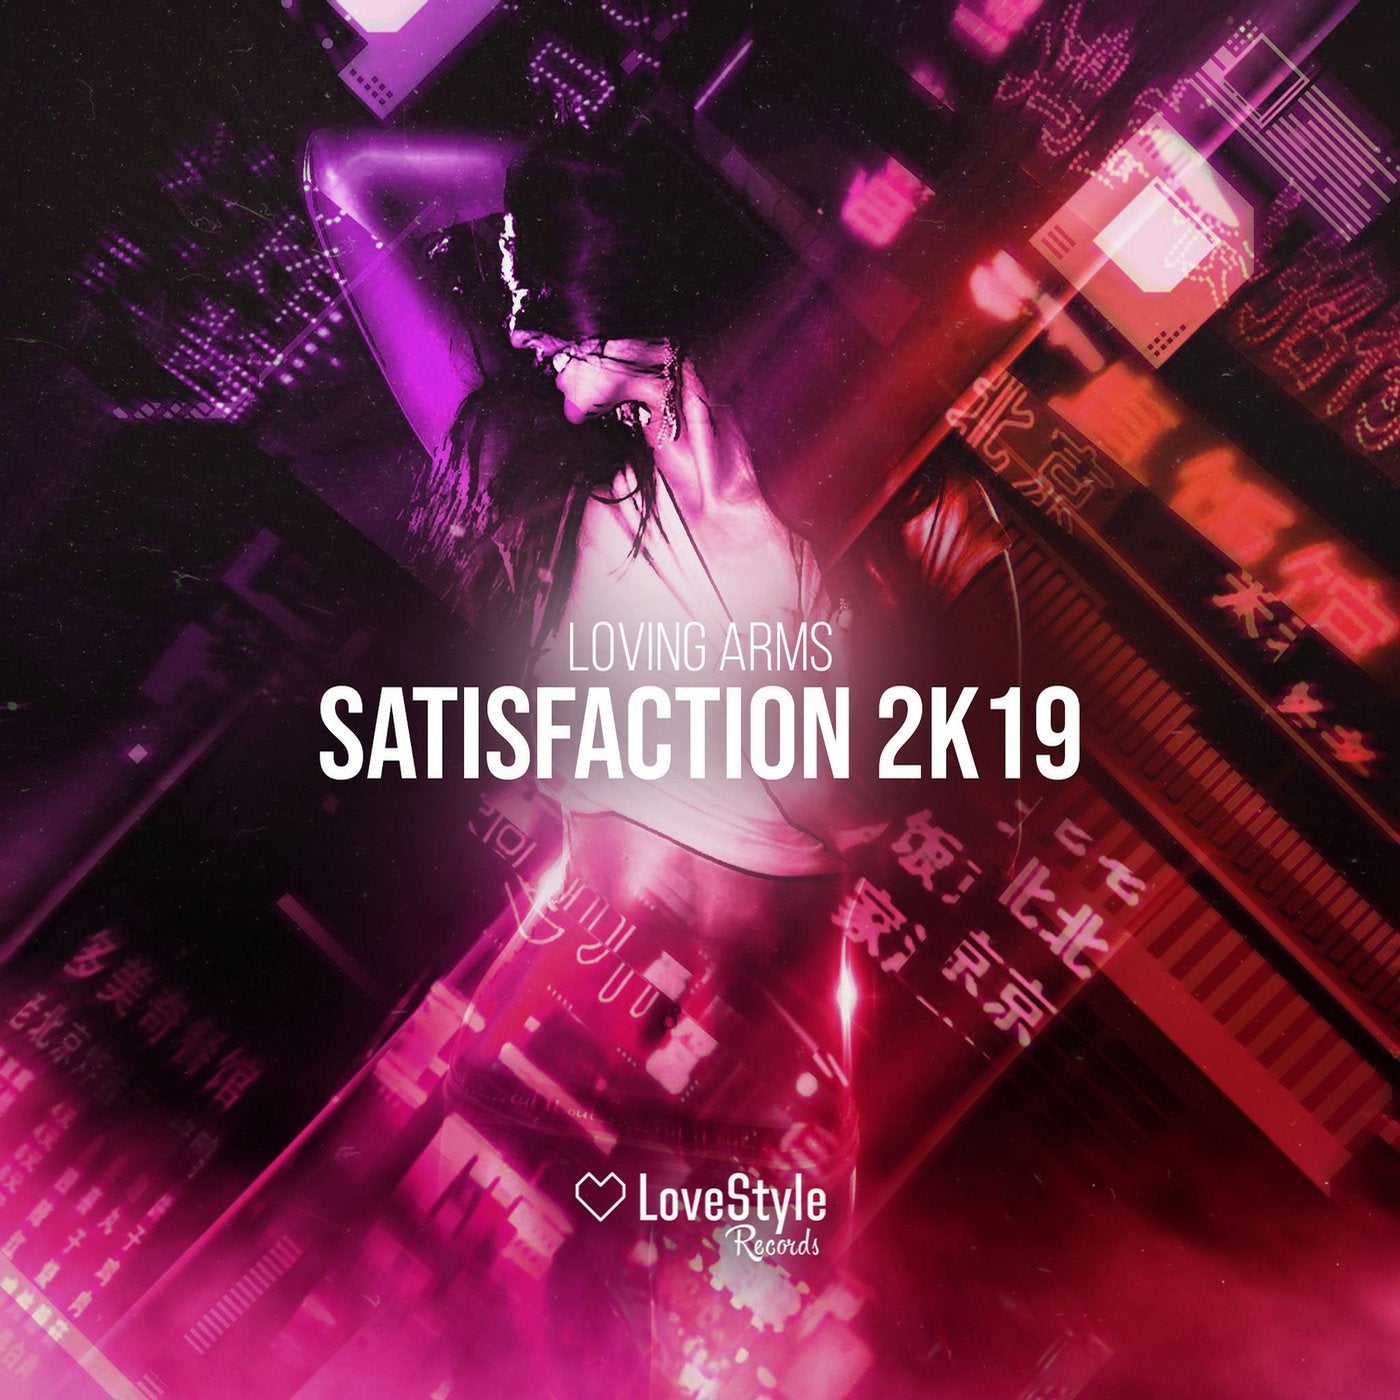 Satisfaction 2k19